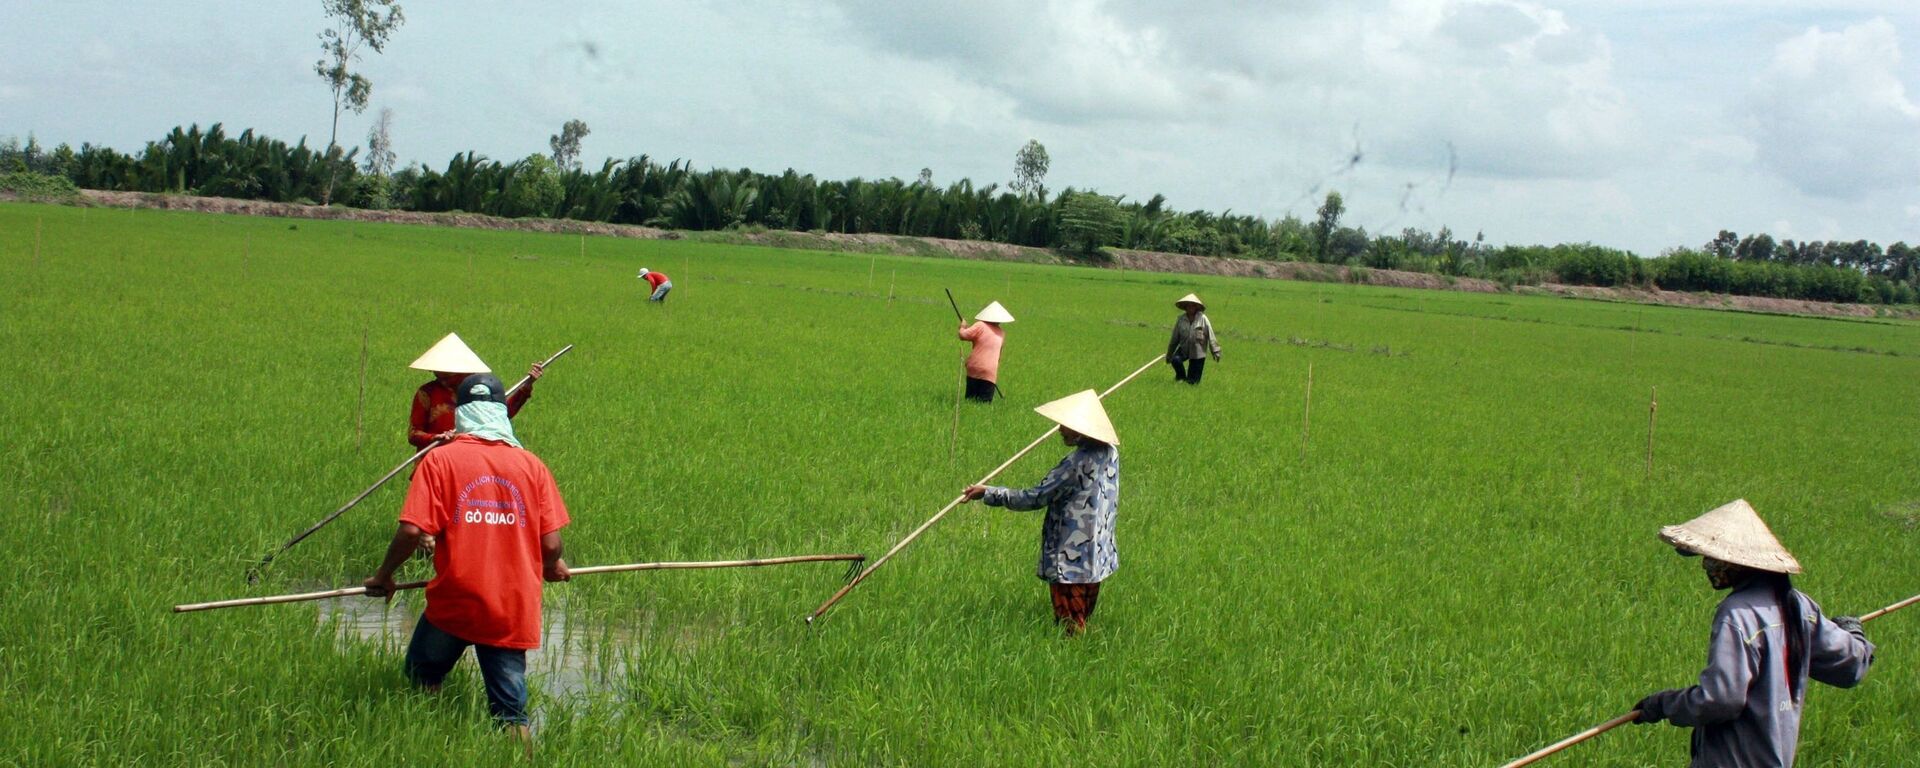 Các thành viên hợp tác xã liên kết trong sản xuất, phát triển chuỗi giá trị lúa gạo chất lượng cao. - Sputnik Việt Nam, 1920, 27.07.2020